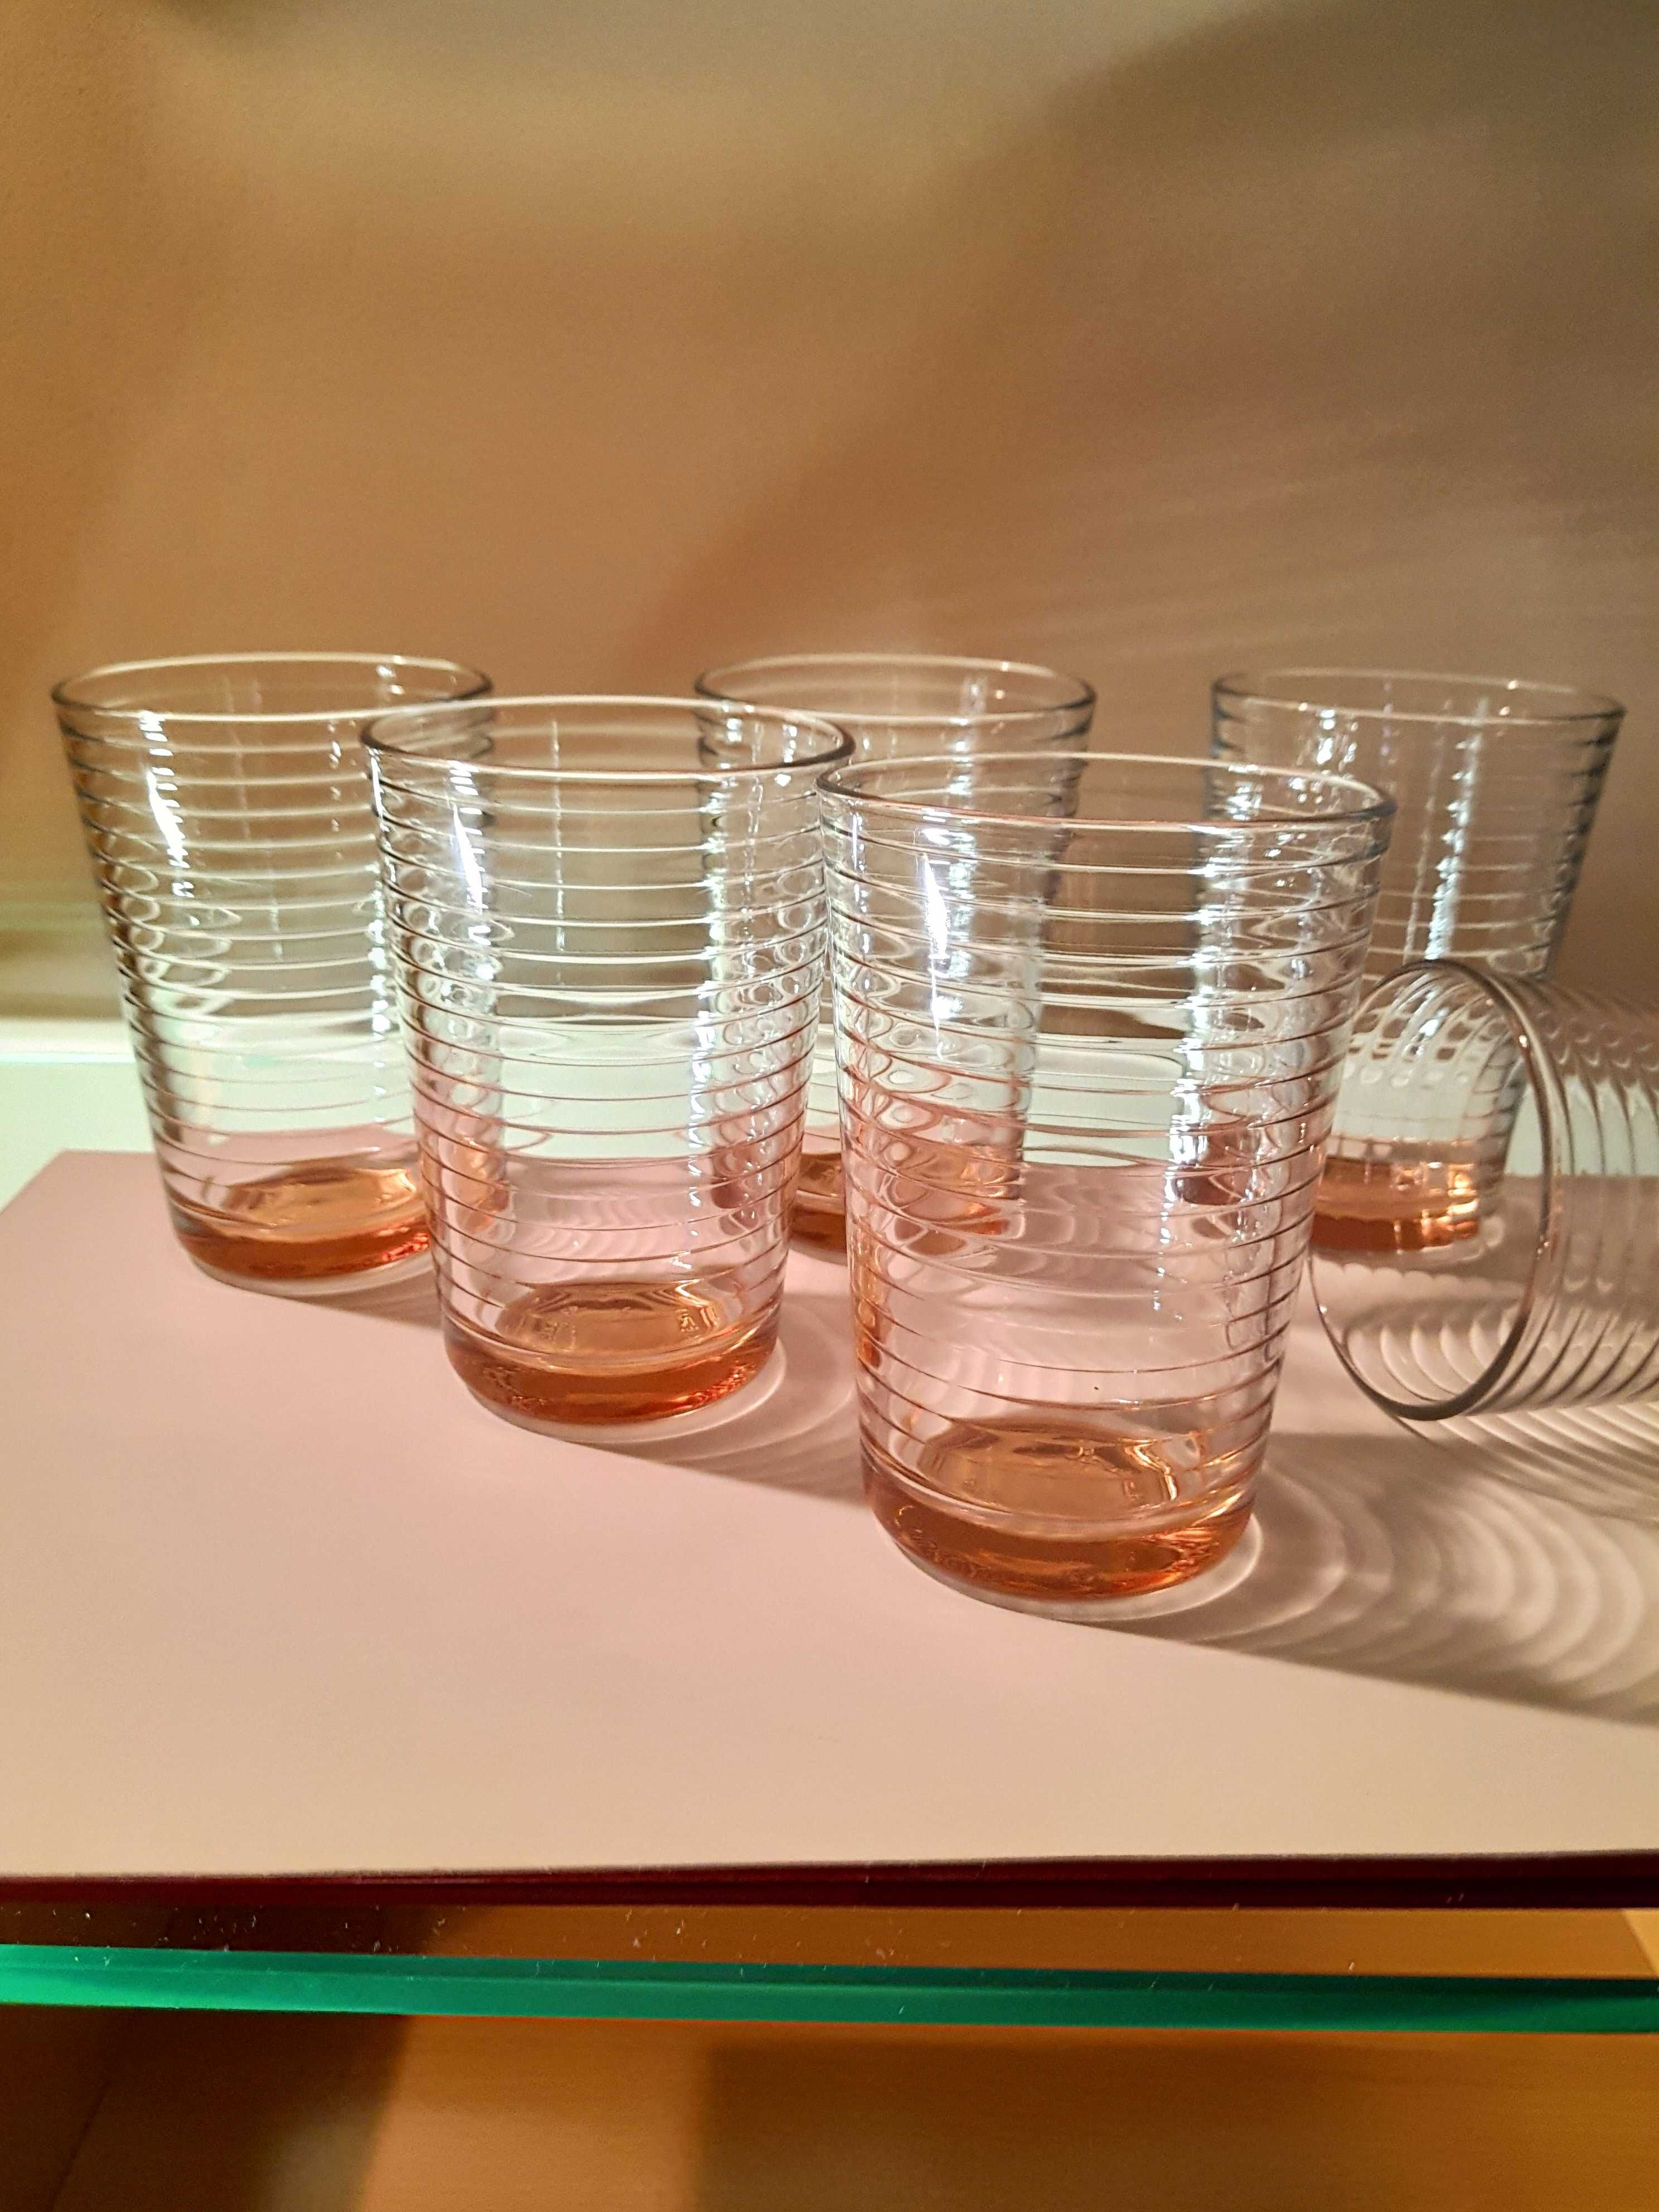 Новый набор из 6 стаканов Pasabahce Турция. Карамель.